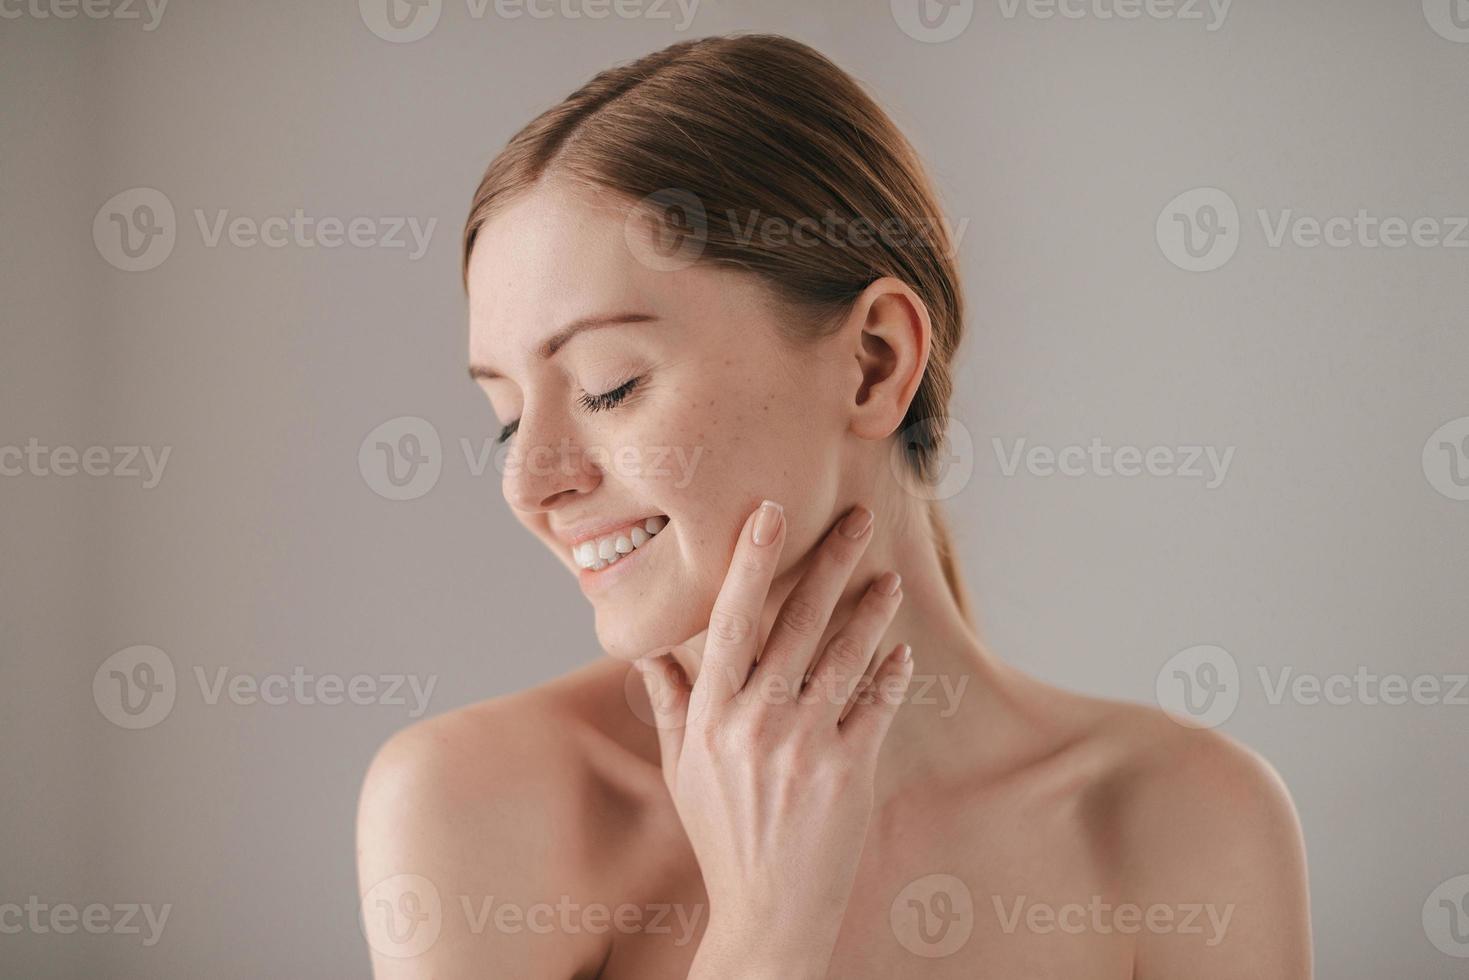 känslig vård för en lysande hud. porträtt av rödhårig kvinna med fräknar förvaring ögon stängd och leende medan rörande henne ansikte och stående mot grå bakgrund foto